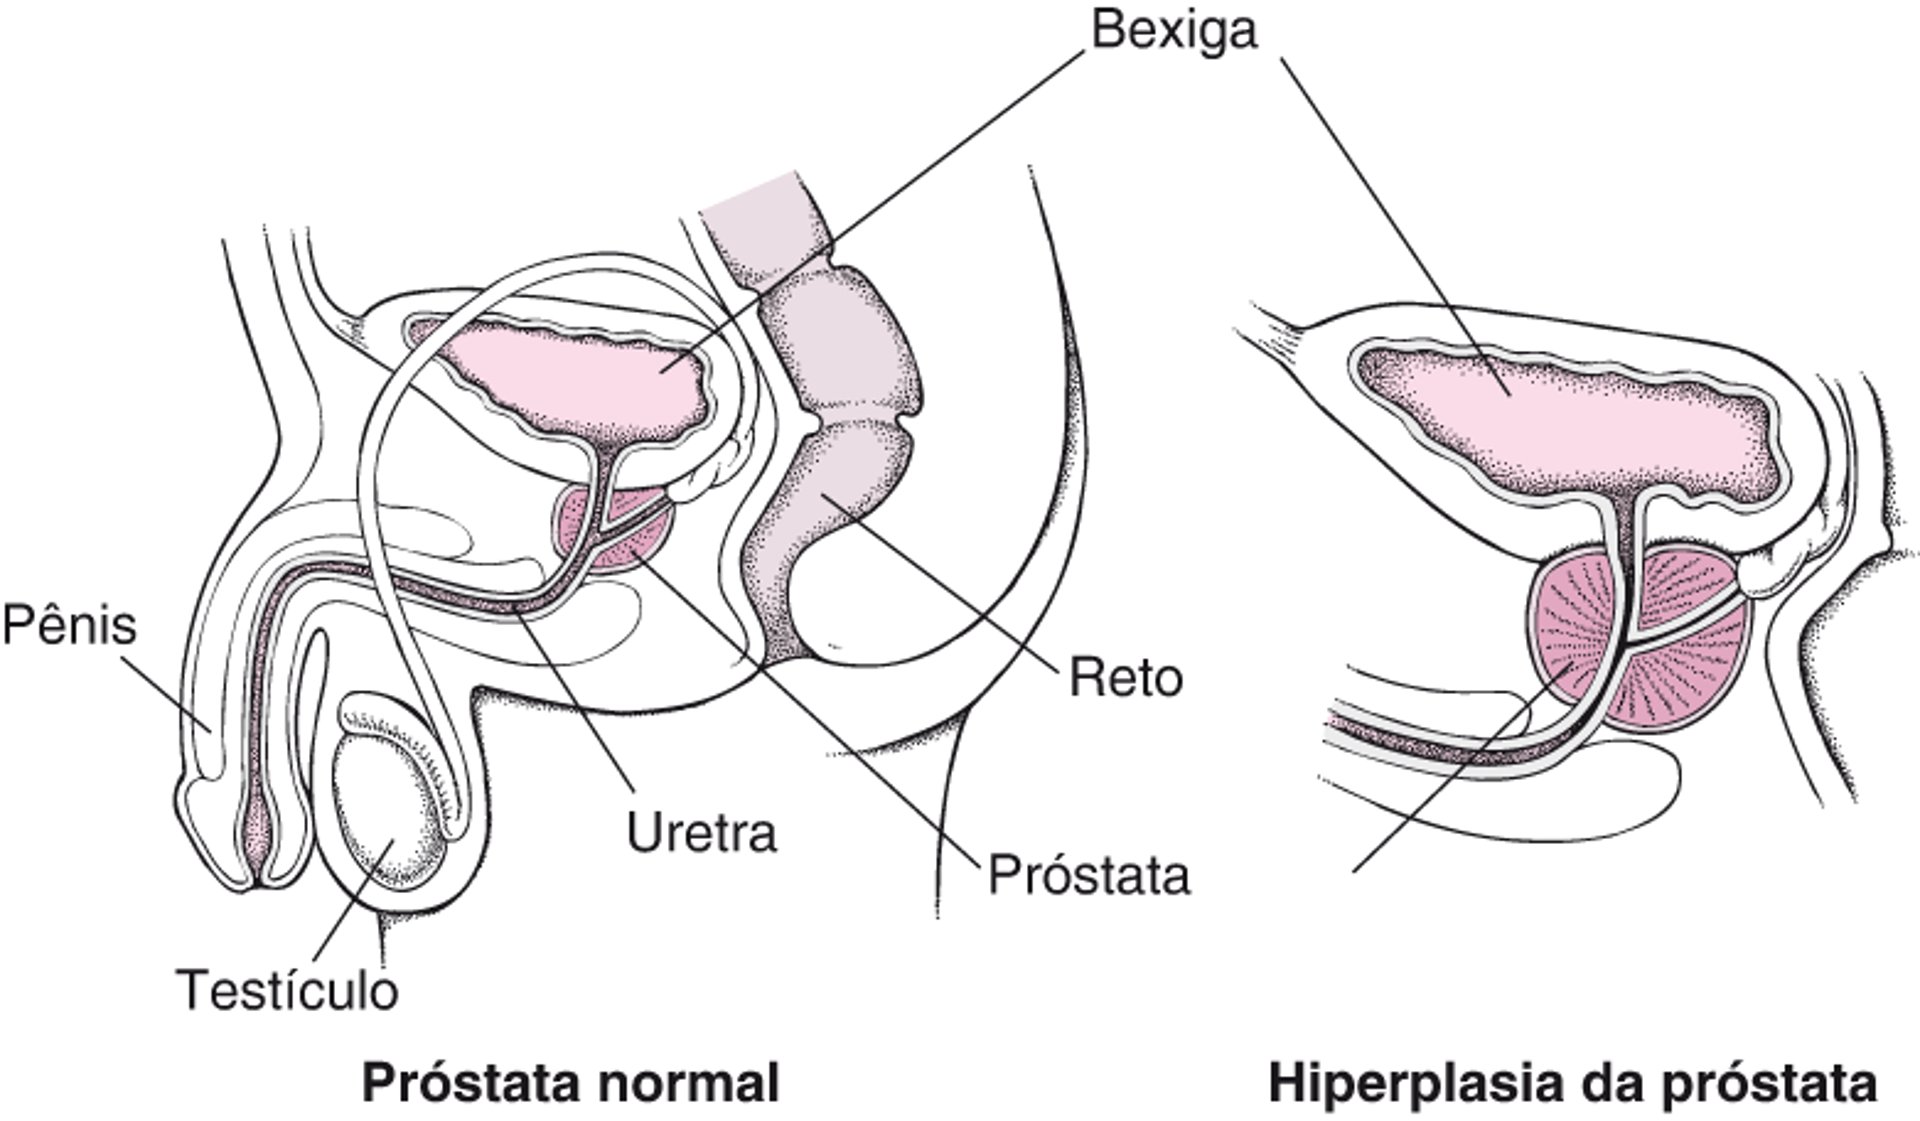 O que acontece quando a glândula prostática aumenta?